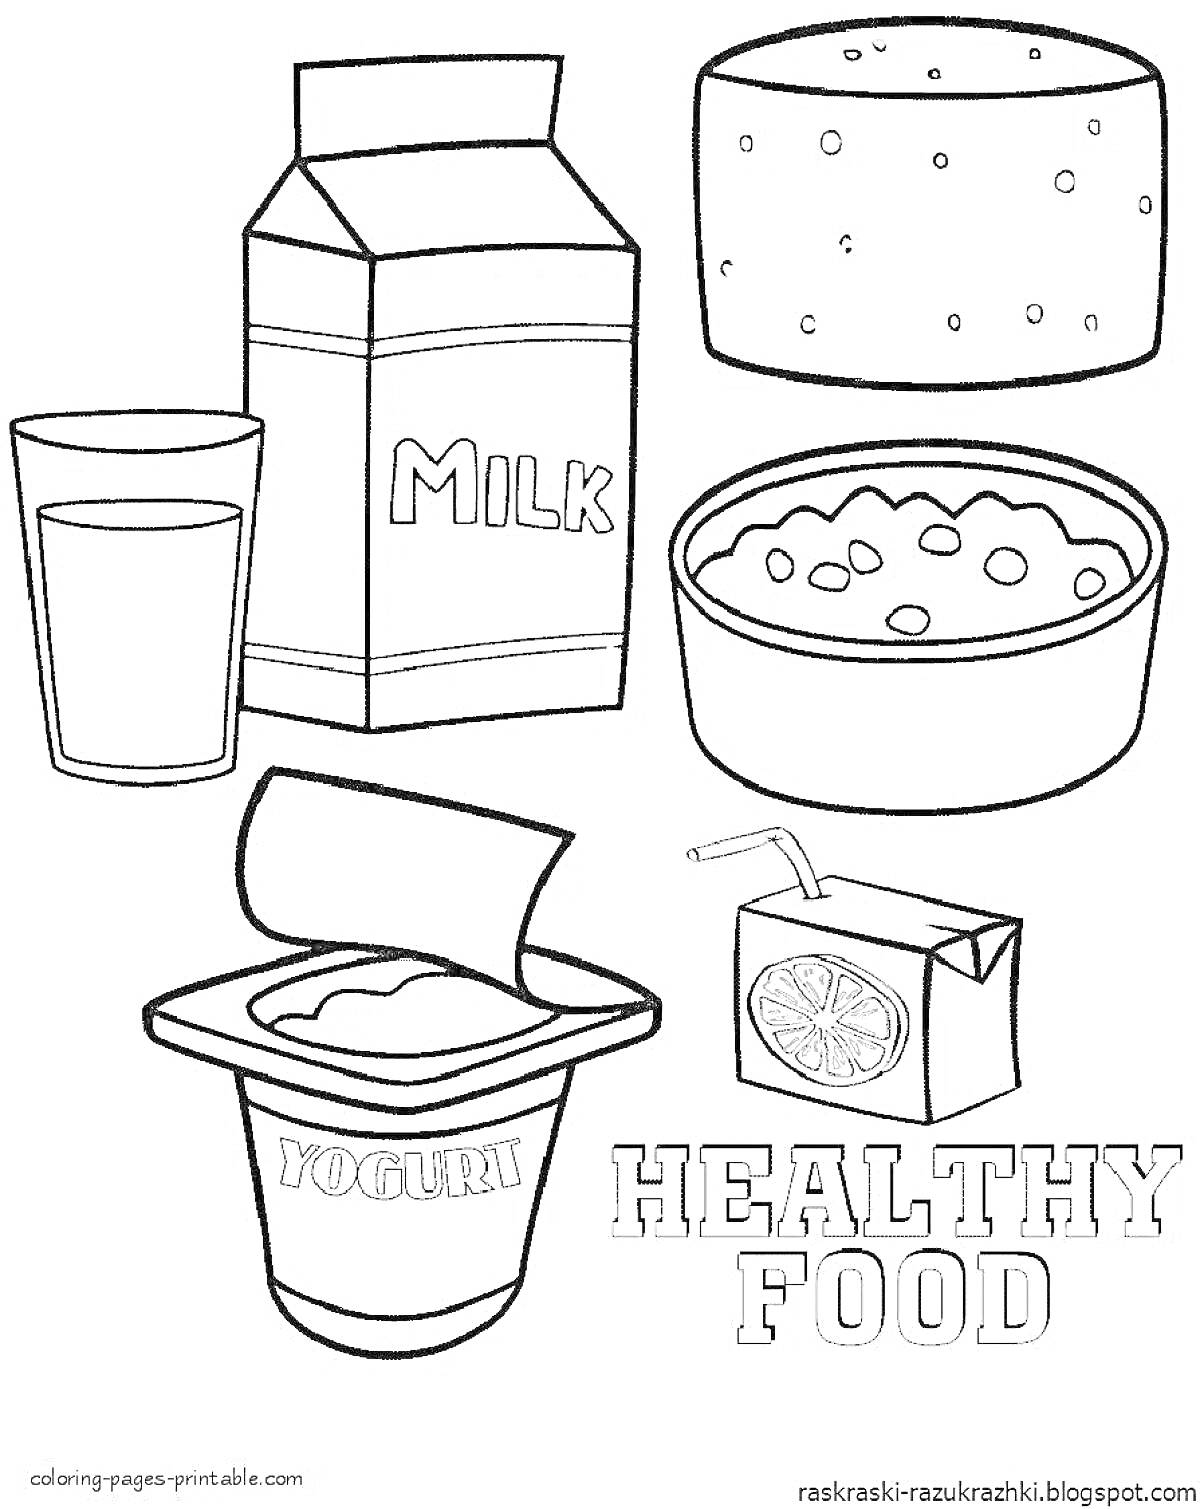 молоко, стакан с молоком, сыр, миска с хлопьями, йогурт, сок в коробке с трубочкой, надпись 